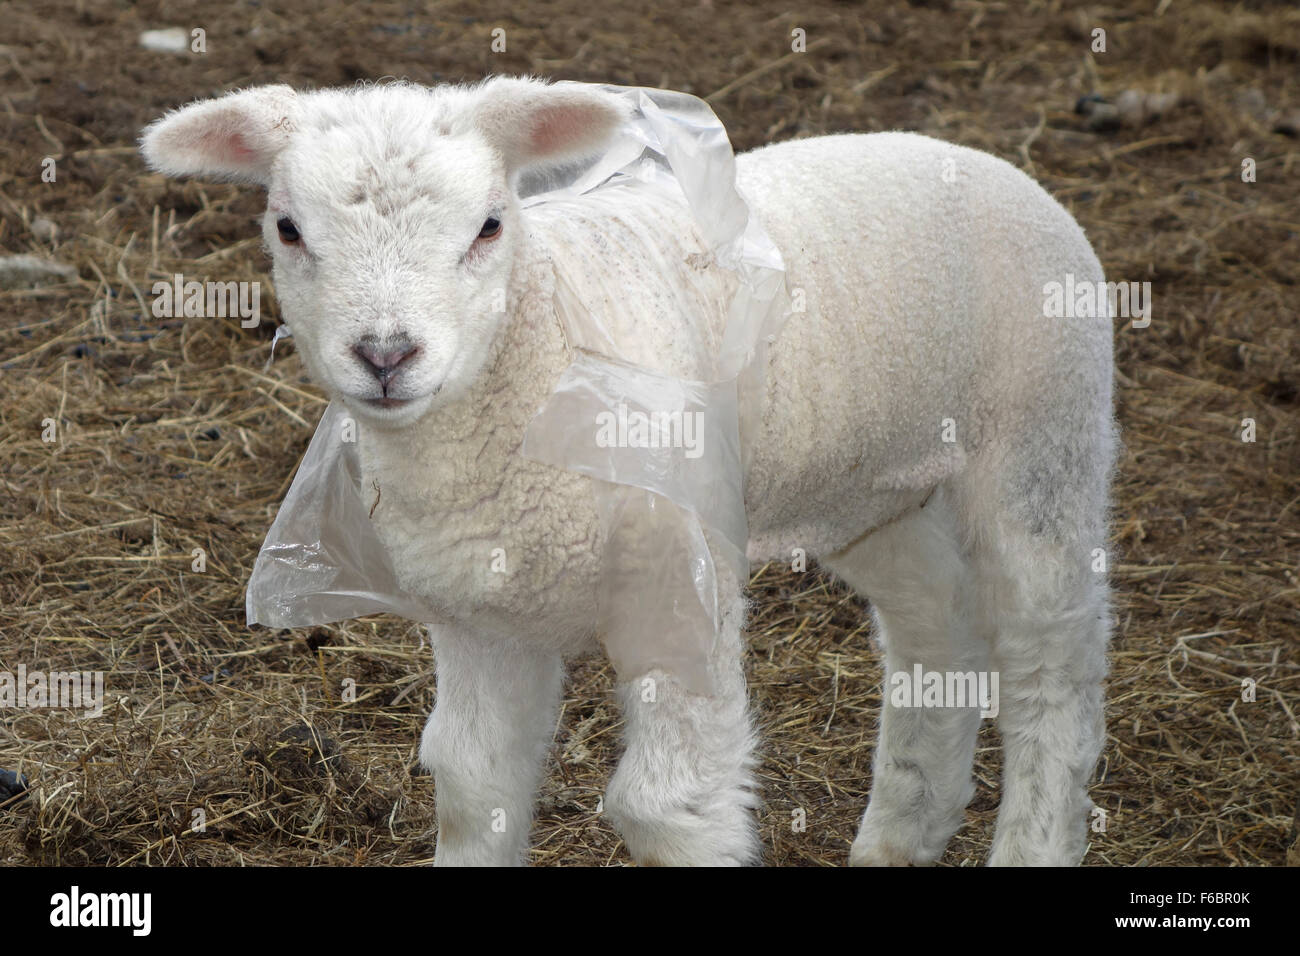 Portant un agneau veste en polyéthylène biodégradable pour aider à garder au chaud pendant un printemps froid en Cumbria, UK Banque D'Images